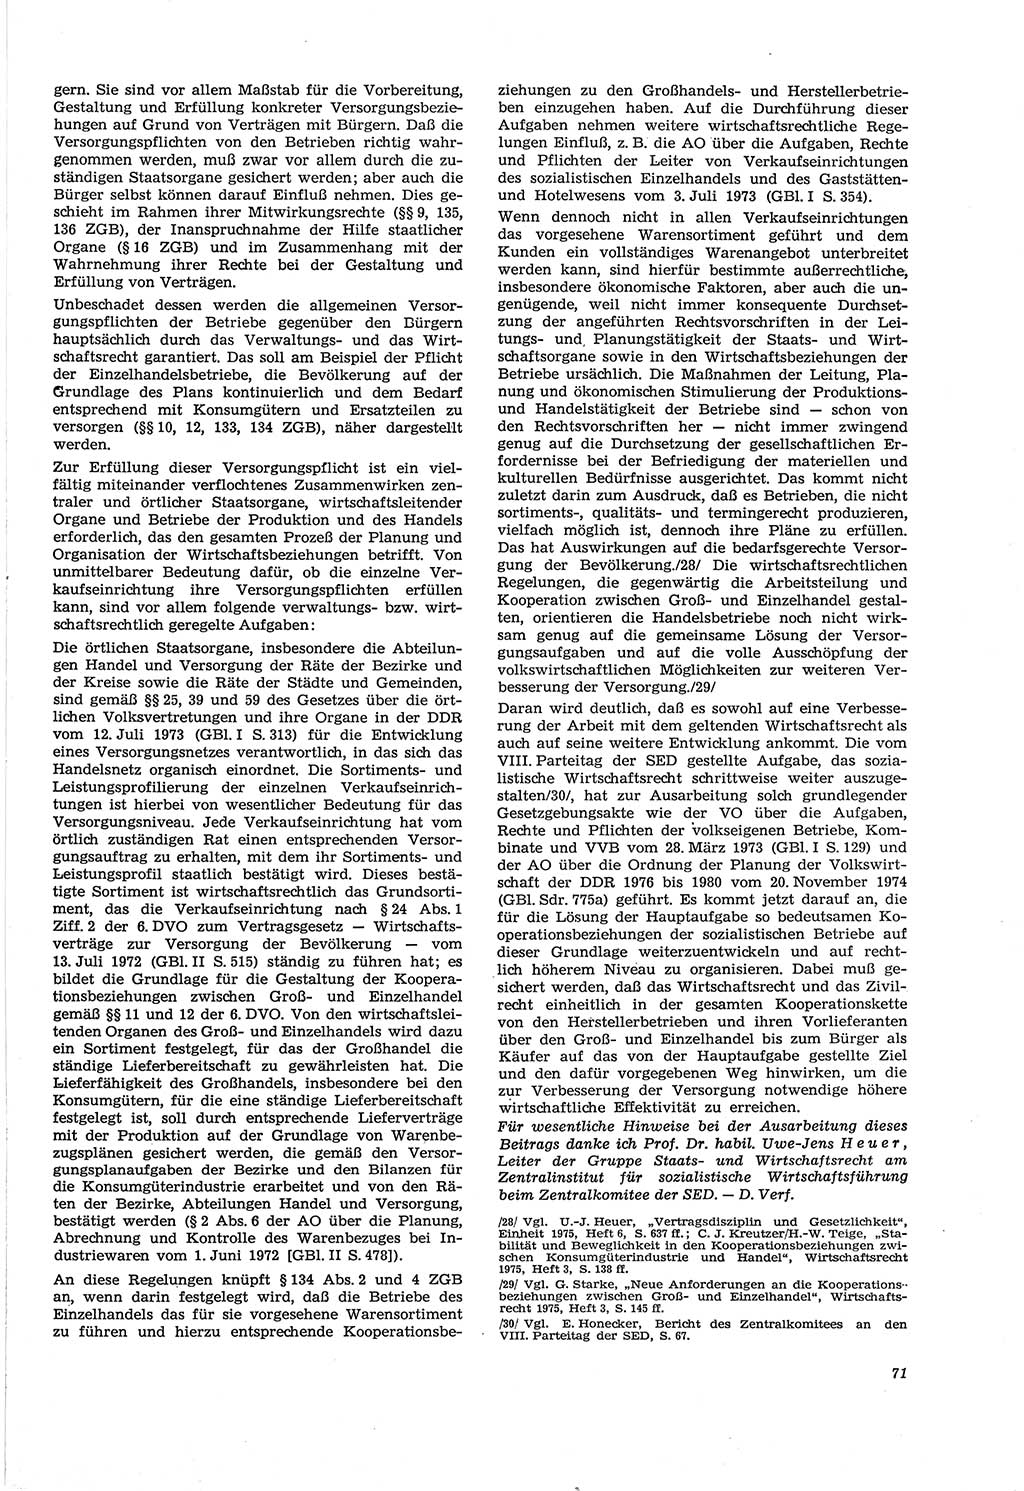 Neue Justiz (NJ), Zeitschrift für Recht und Rechtswissenschaft [Deutsche Demokratische Republik (DDR)], 30. Jahrgang 1976, Seite 71 (NJ DDR 1976, S. 71)